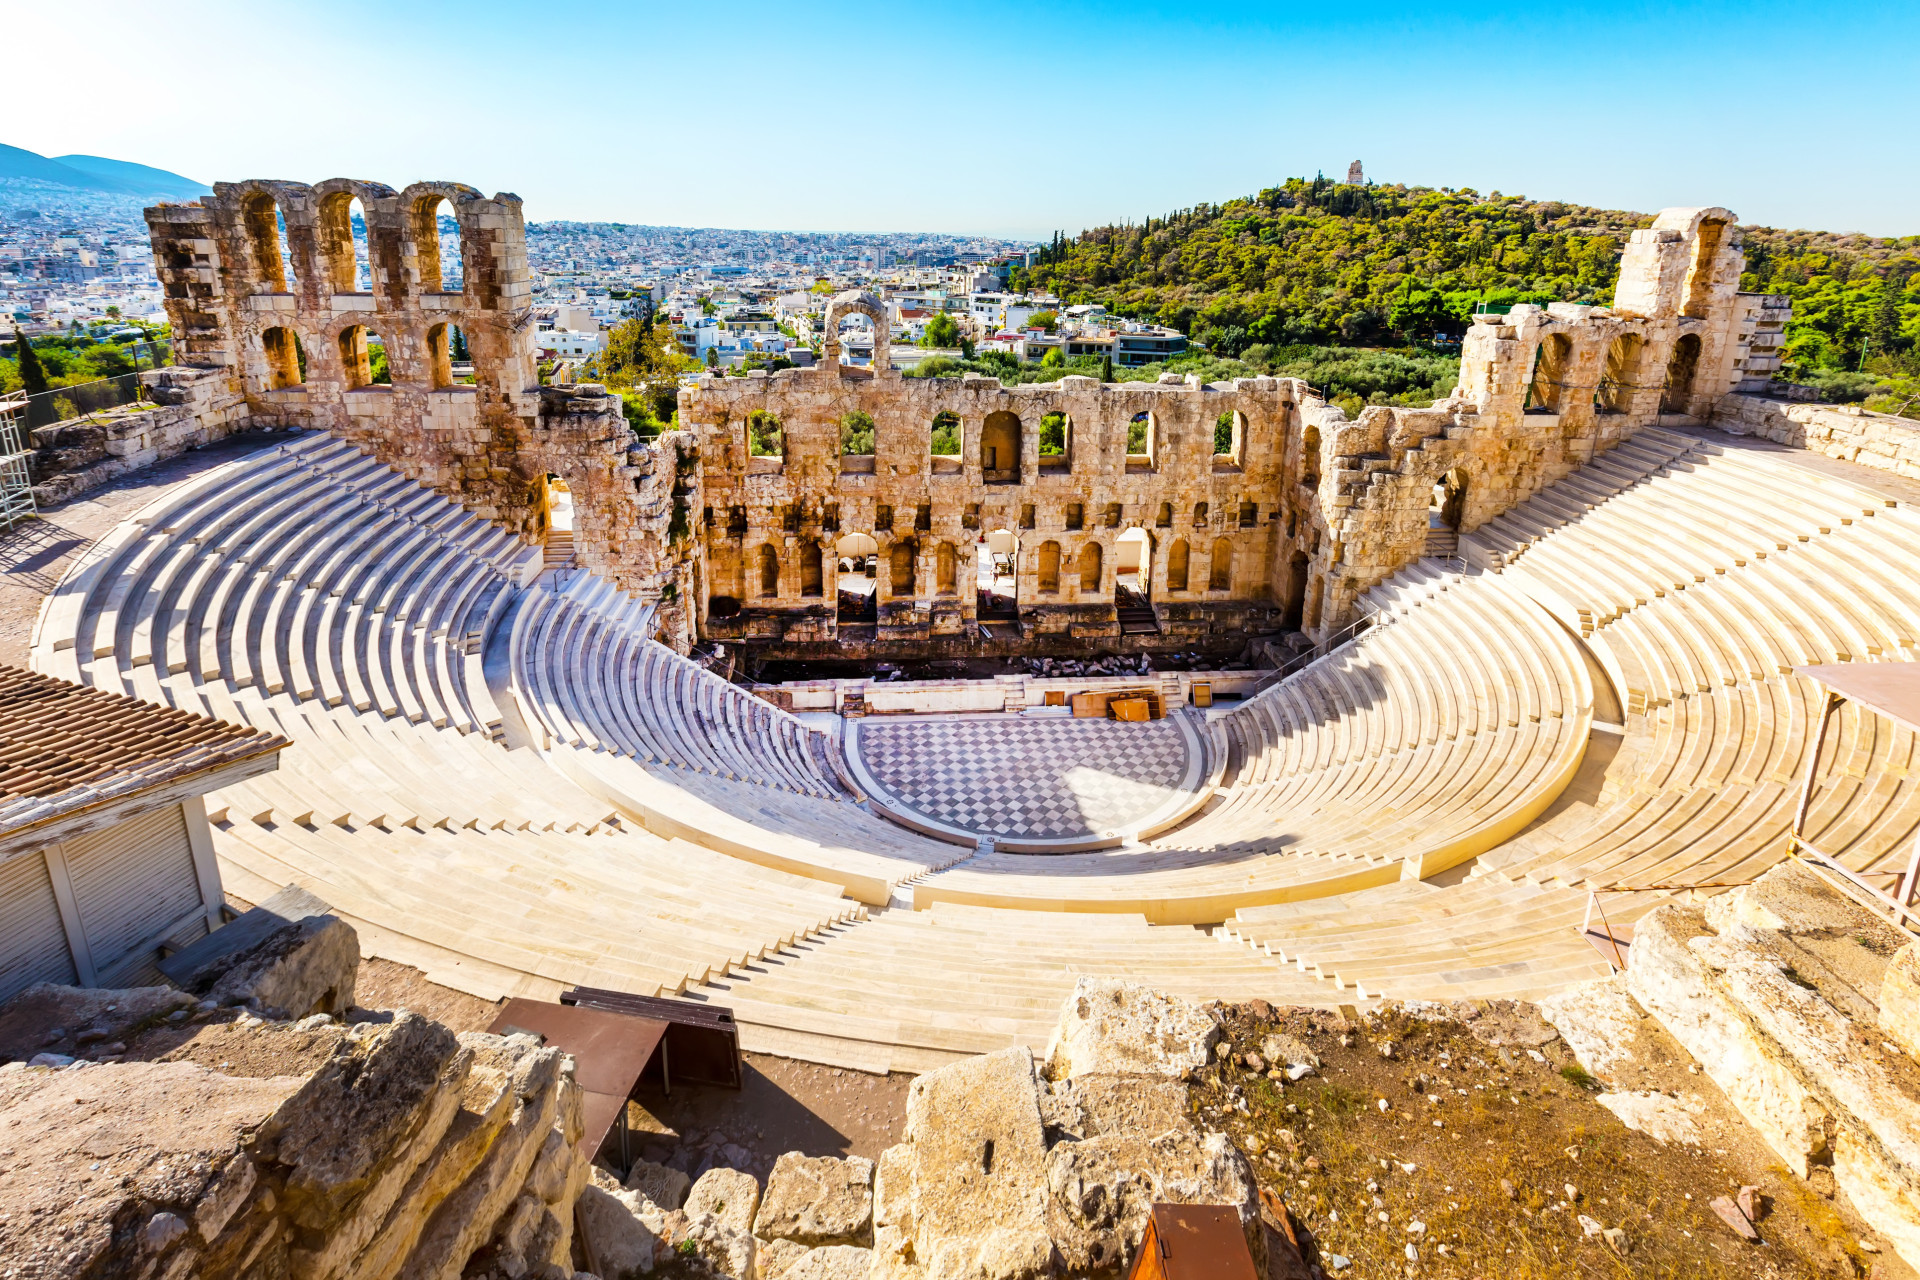 Si la cuisine grecque n'a pas suffit à vous convaincre, peut-être que ces vestiges de la Grèce antique sauront mieux vous charmer. Ces ruines datent de plusieurs milliers d'années. Le Parthénon et le théâtre d'Épidaure, entre autres, font de la Grèce le pays disposant du plus grand nombre de patrimoines inscrits à l'UNESCO.<p><a href="https://www.msn.com/fr-fr/community/channel/vid-7xx8mnucu55yw63we9va2gwr7uihbxwc68fxqp25x6tg4ftibpra?cvid=94631541bc0f4f89bfd59158d696ad7e">Suivez-nous et accédez tous les jours à du contenu exclusif</a></p>